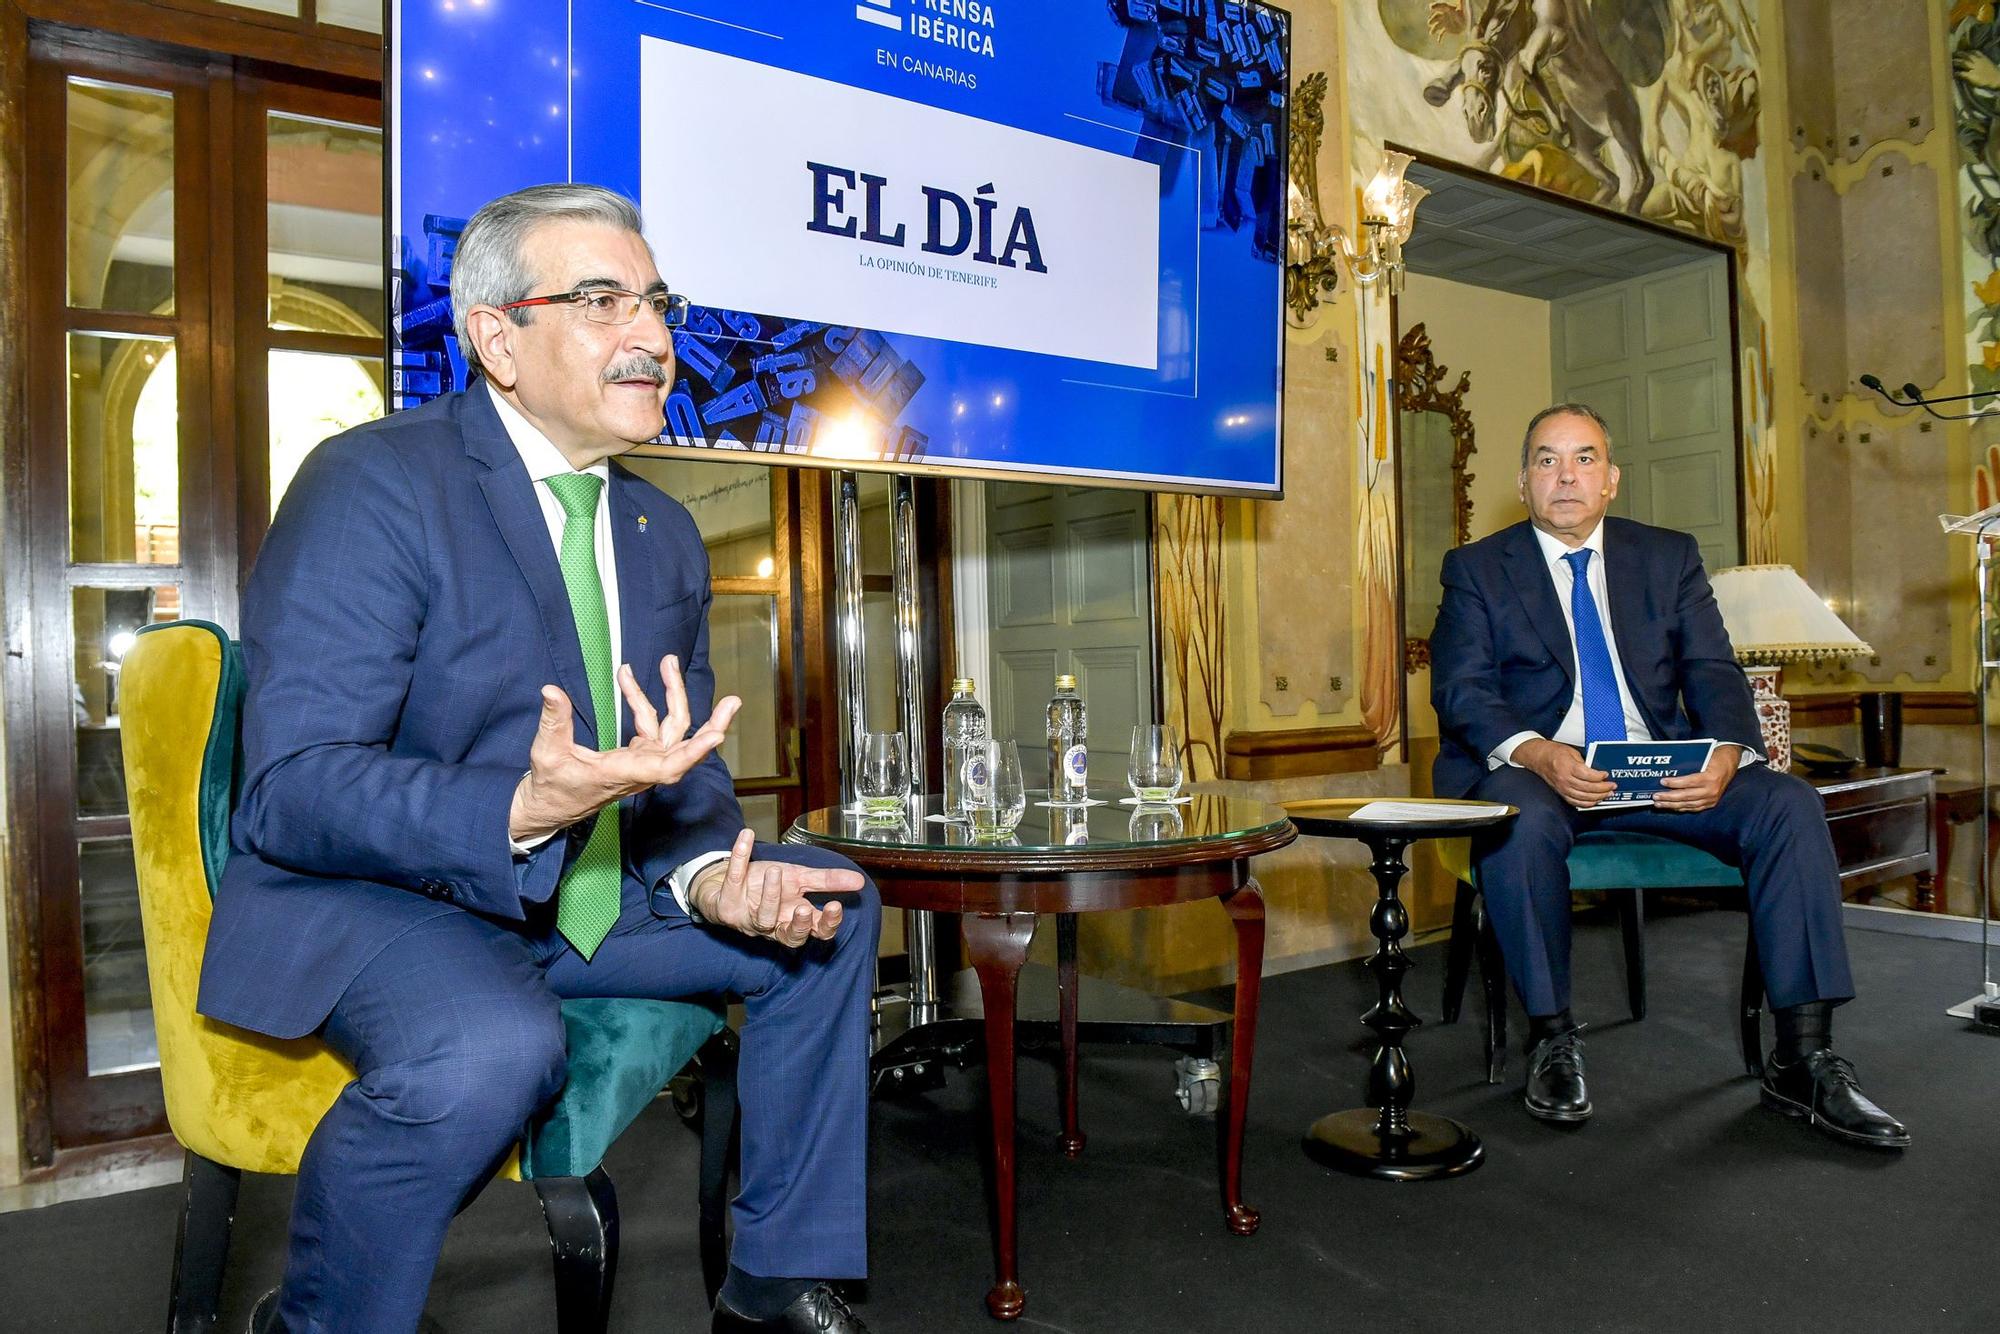 Román Rodríguez interviene en el Foro de Prensa Ibérica con la conferencia 'Capaces de un futuro mejor'